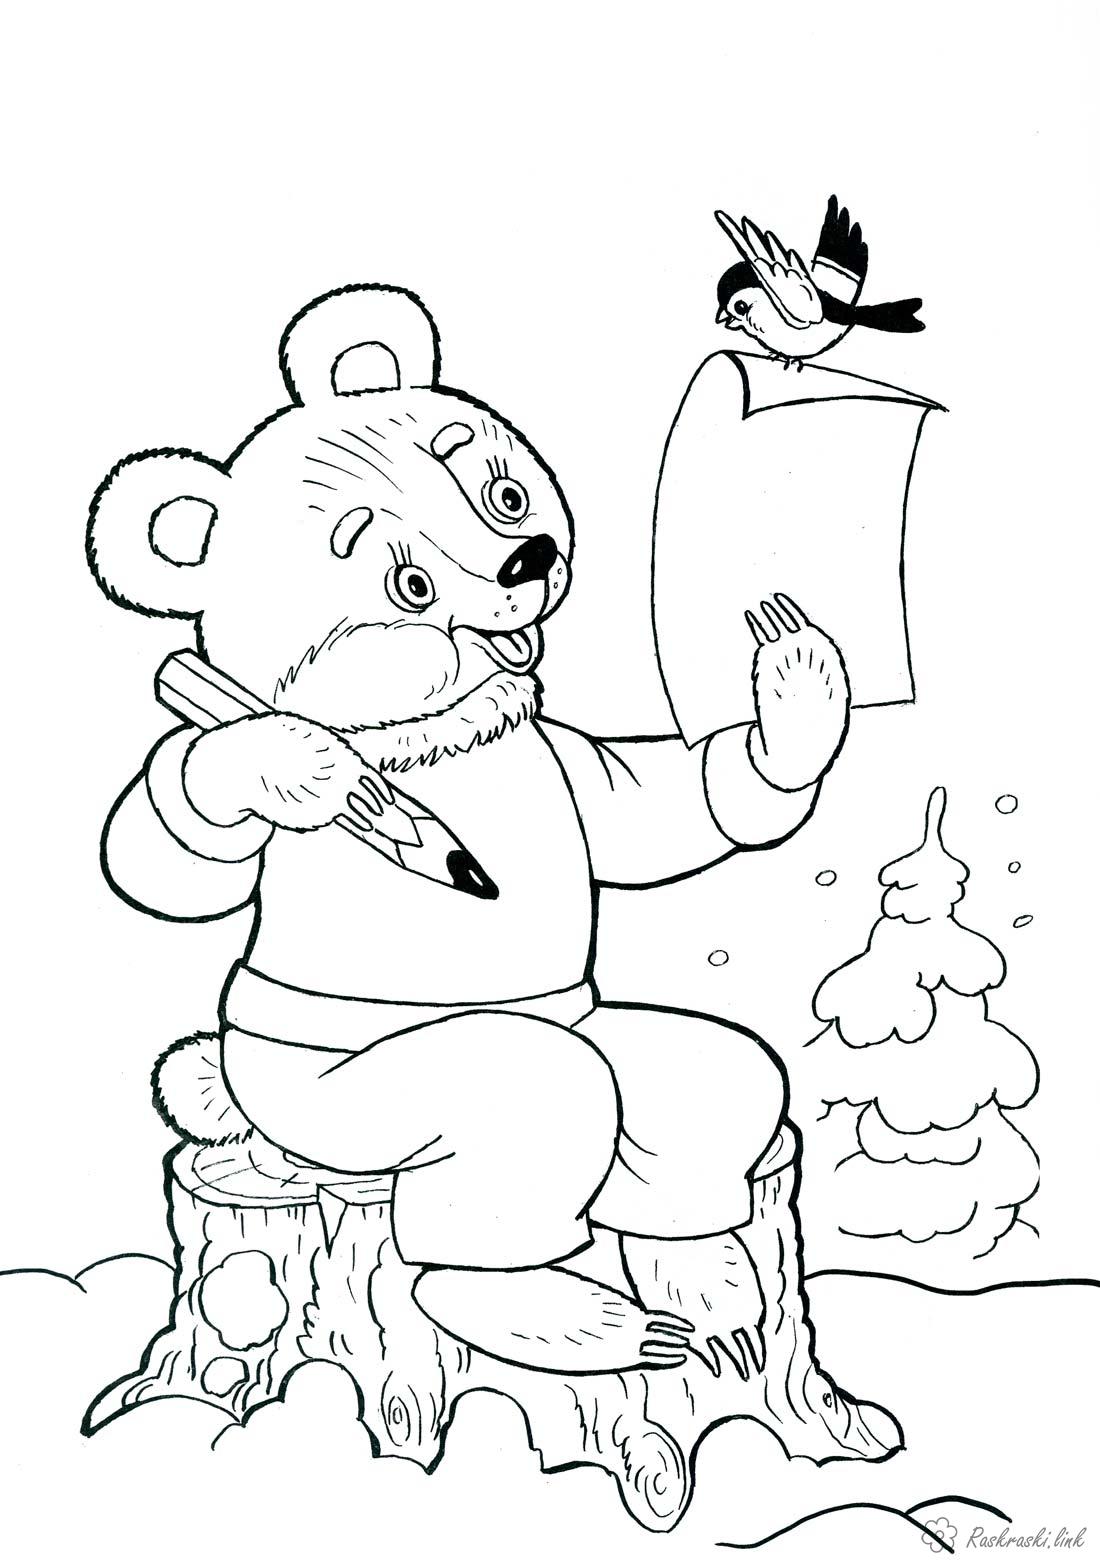 Розмальовки дитяча дитяча новорічна розфарбування, ведмедик пише лист Діду Морозу